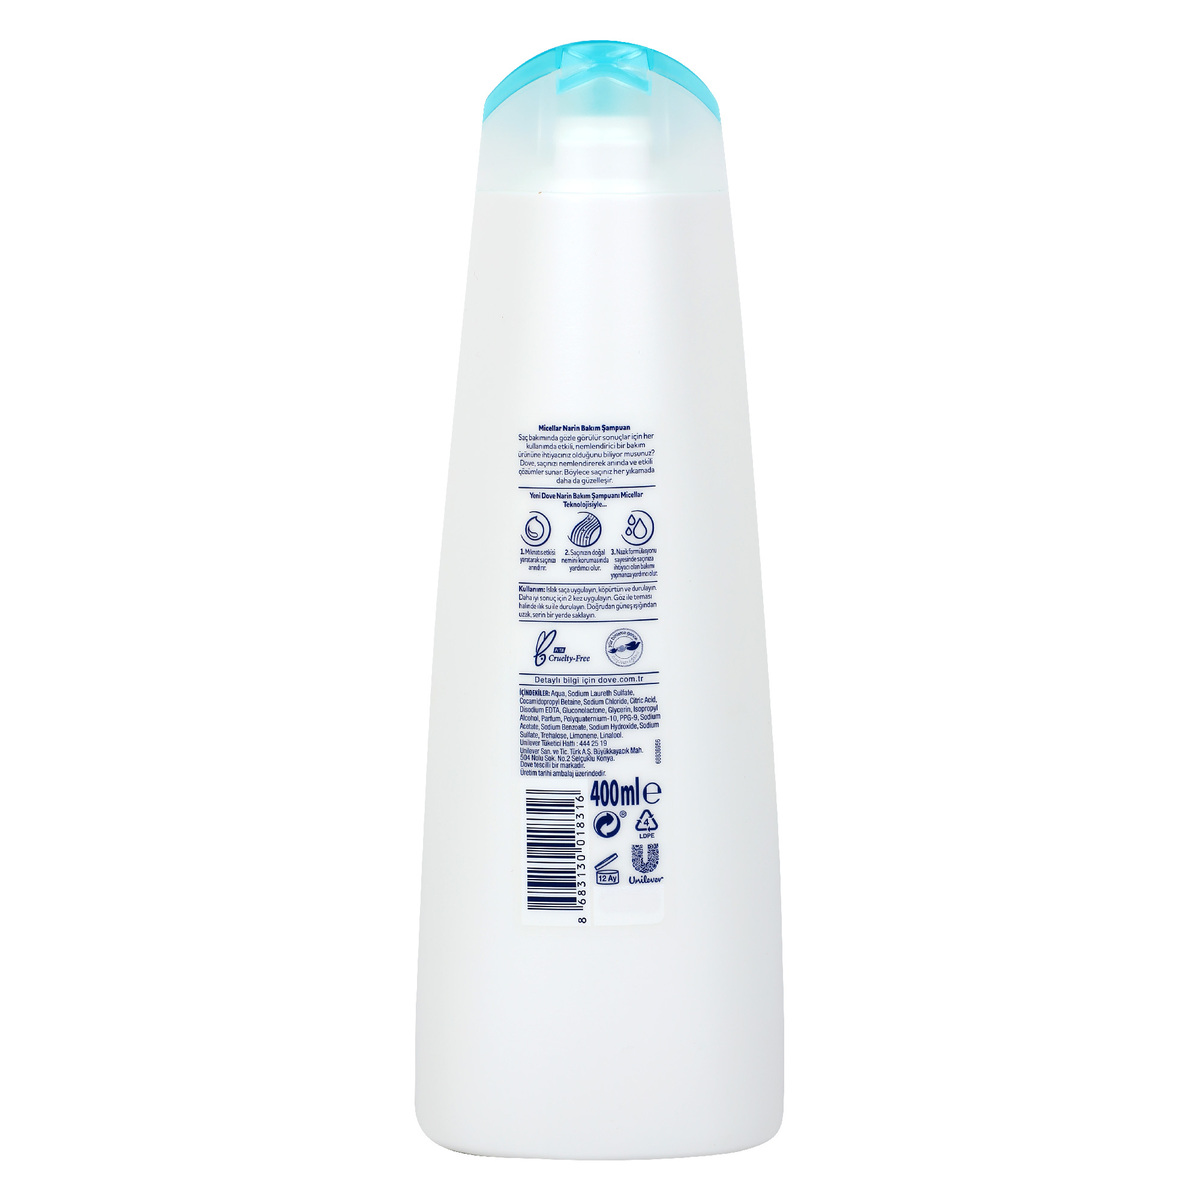 Dove Shampoo Sensitive Care Micellar, 400 ml